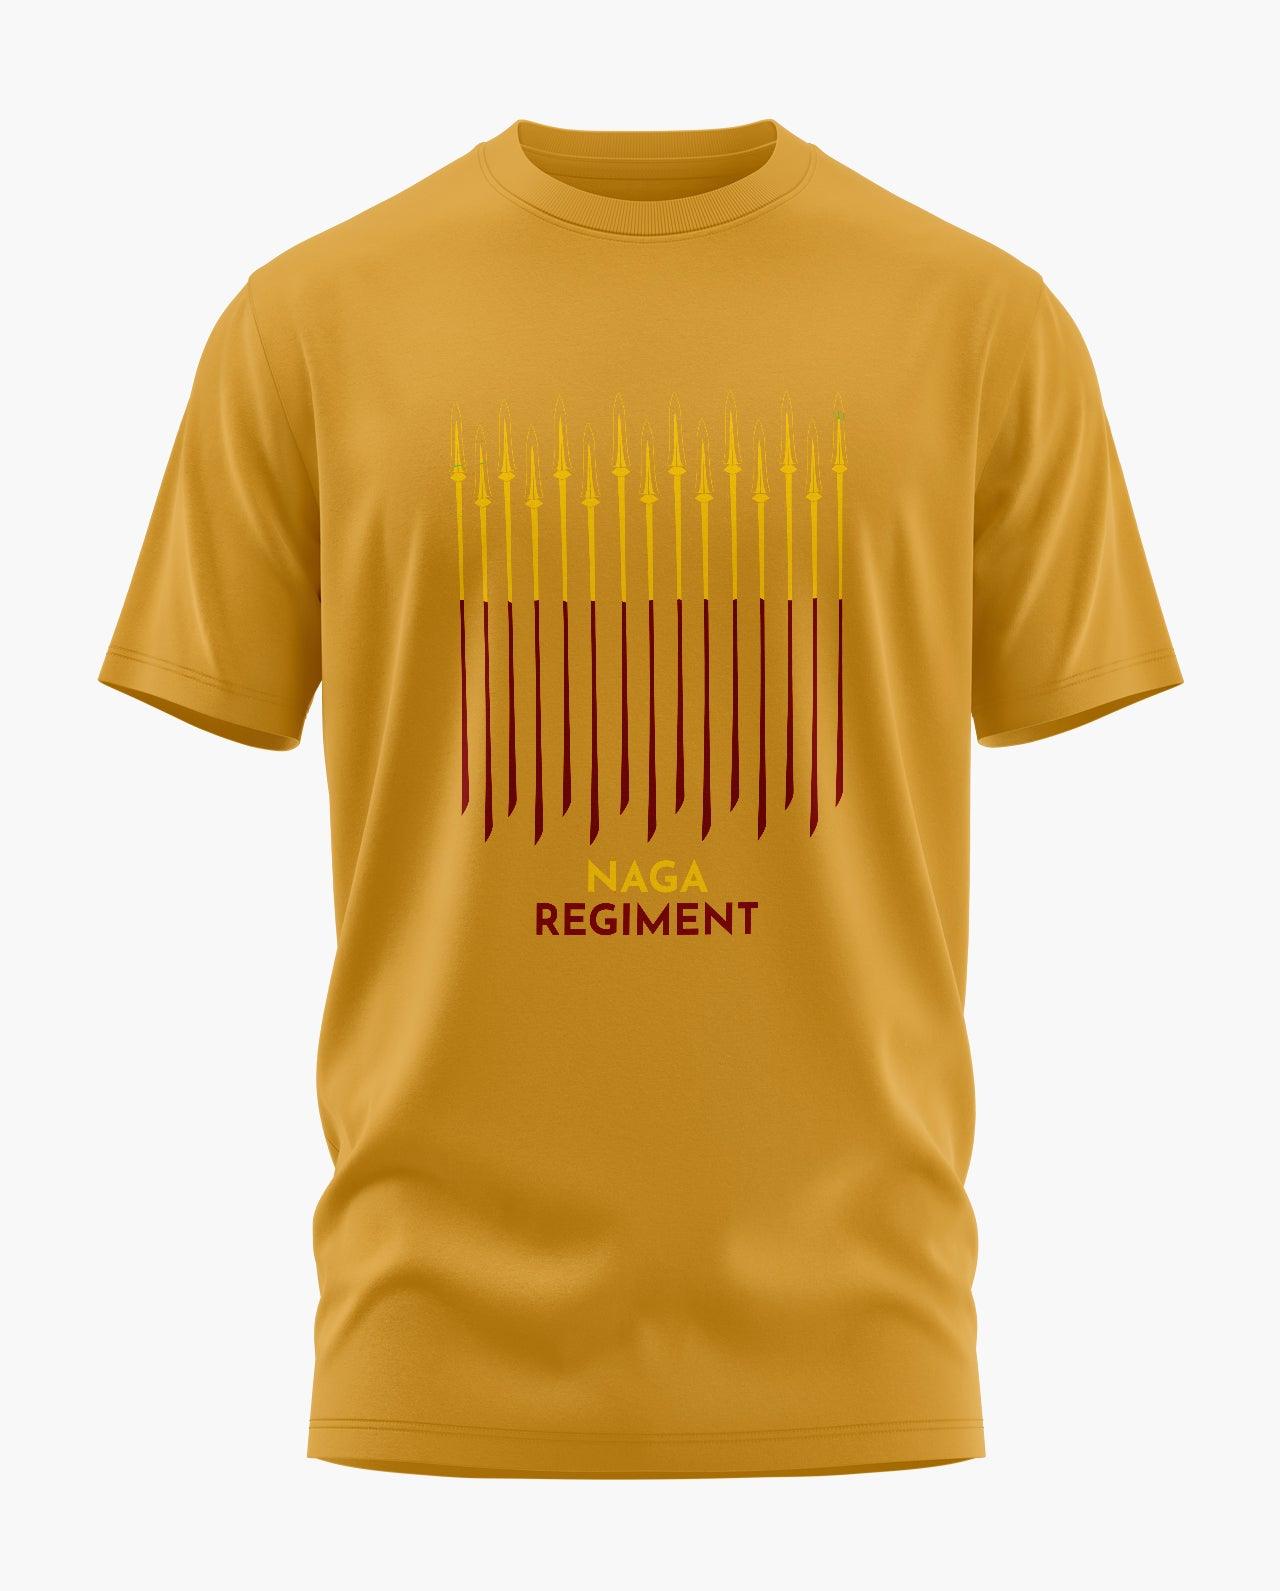 Naga Regiment Motto T-Shirt - Aero Armour